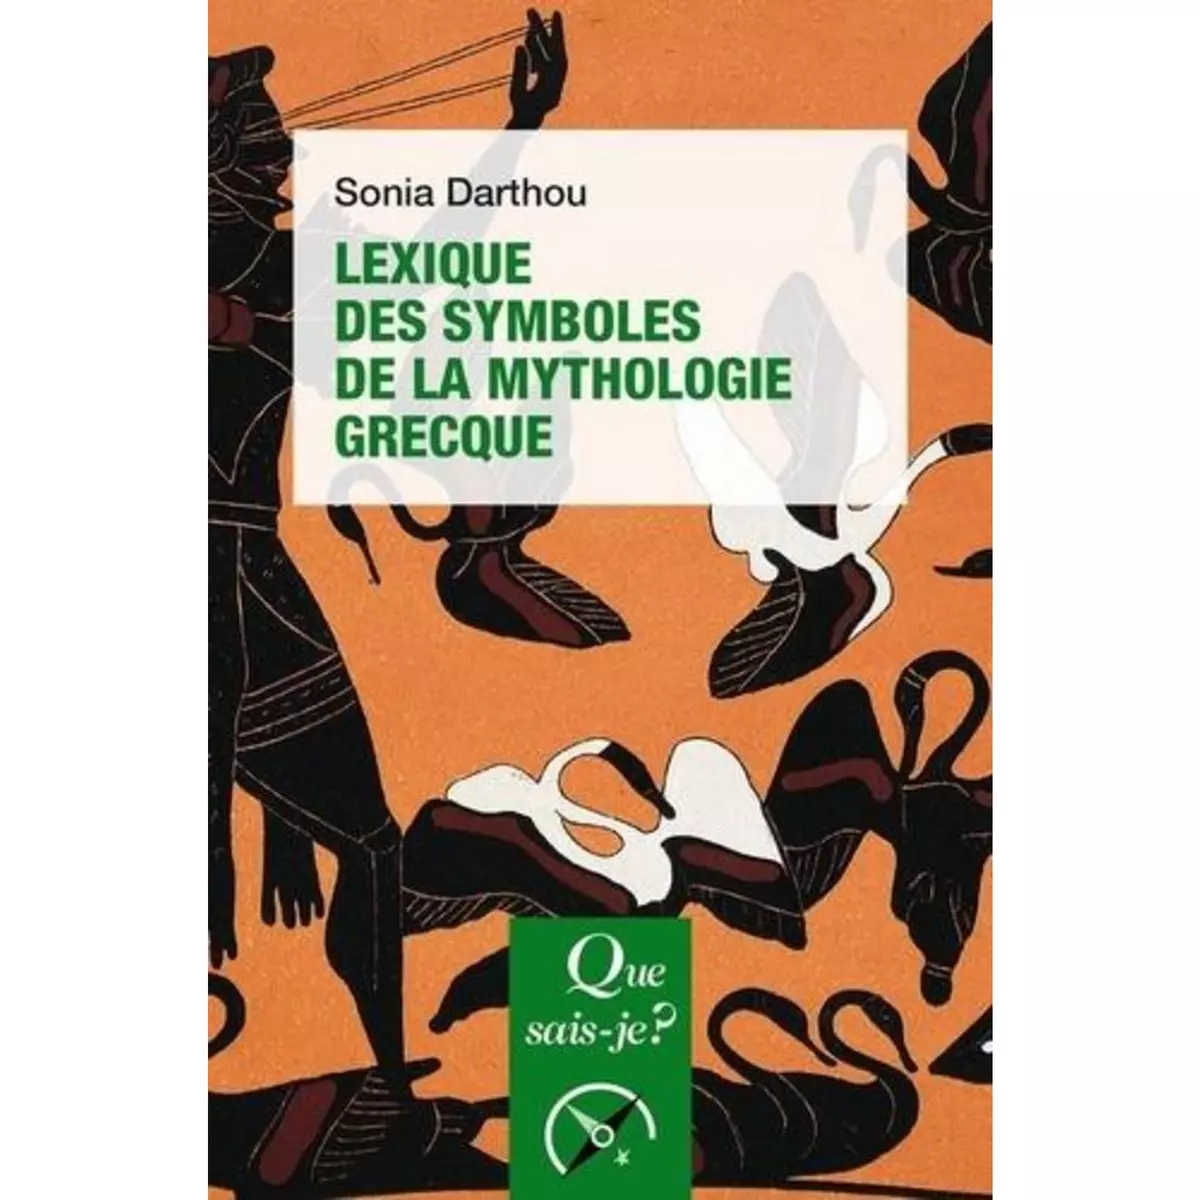  LEXIQUE DES SYMBOLES DE LA MYTHOLOGIE GRECQUE. 3E EDITION, Darthou Sonia